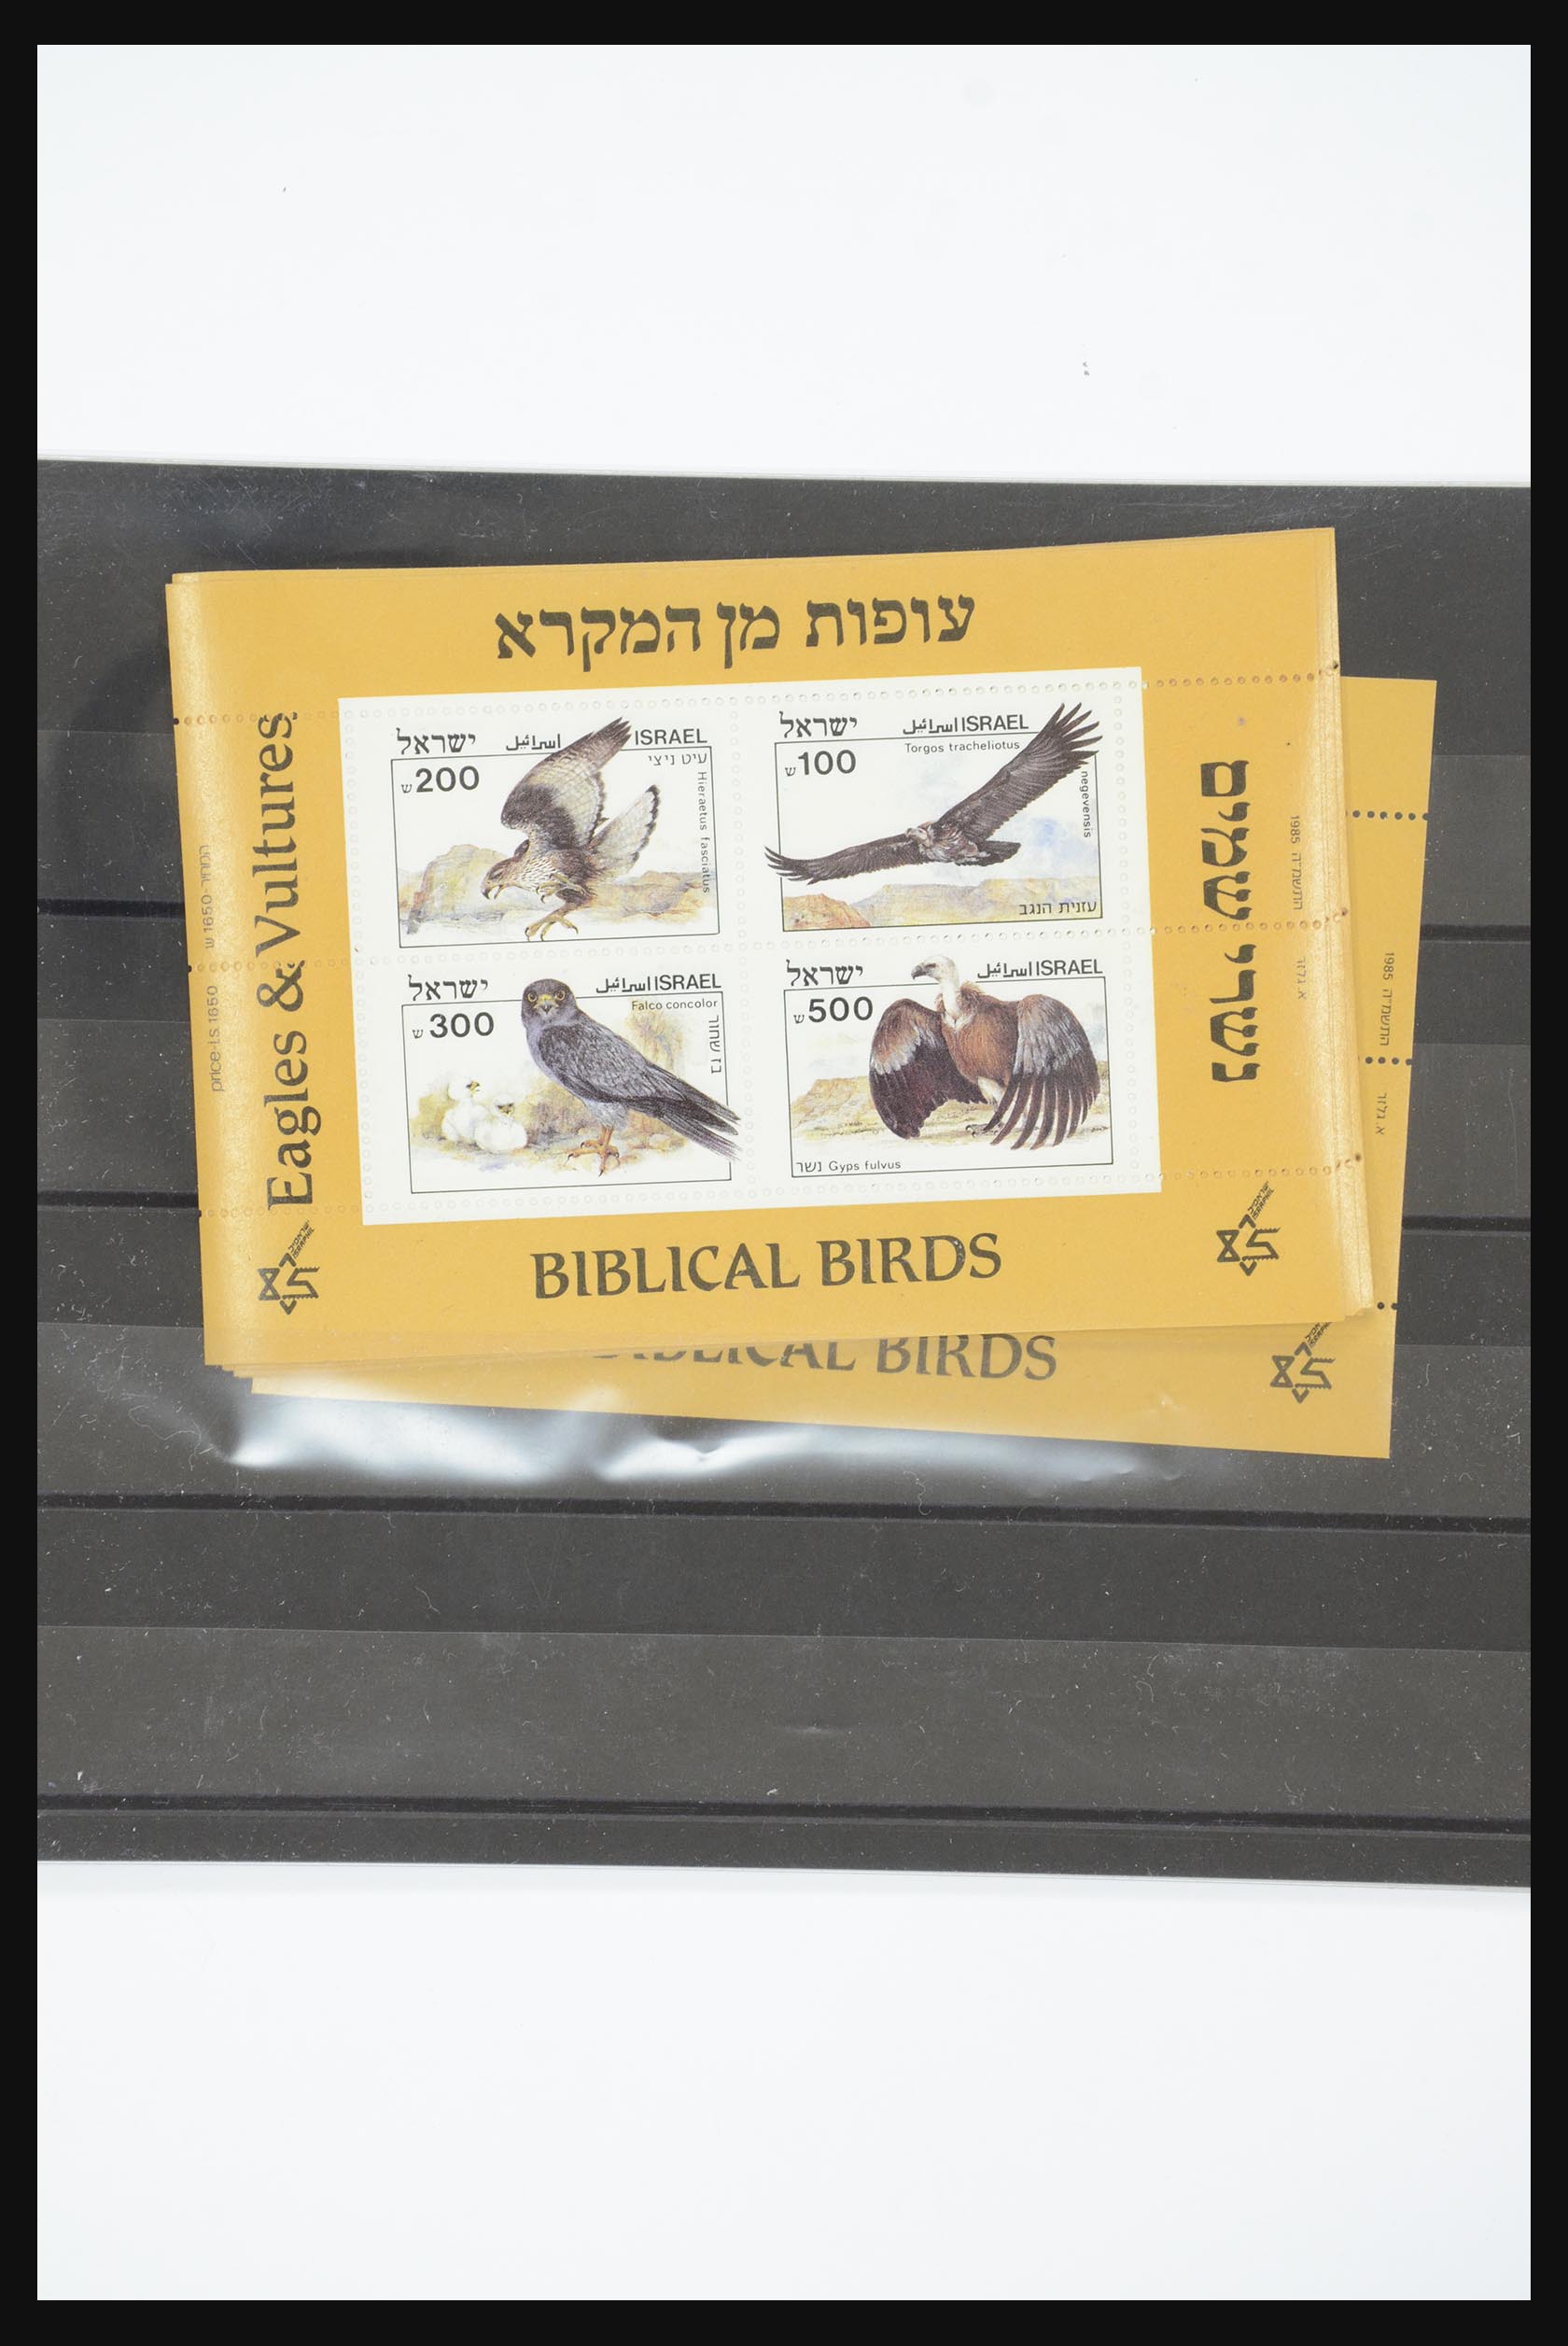 31891 031 - 31891 Israel souvenir sheets 1949-1992.